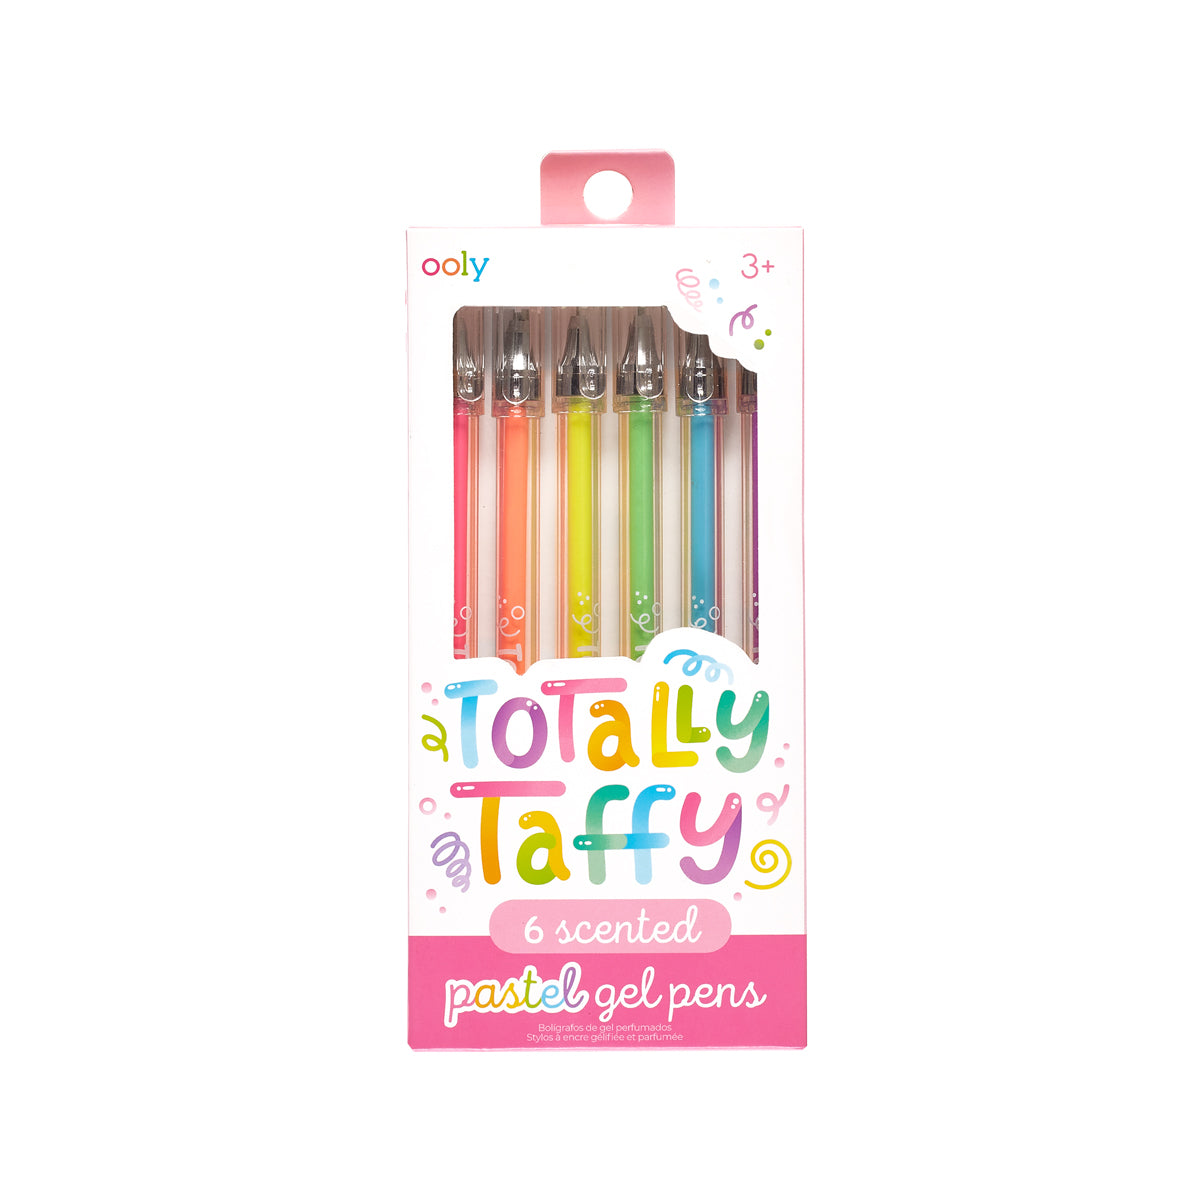 OOLY Totally Taffy Gel Pens in new cardstock packaging